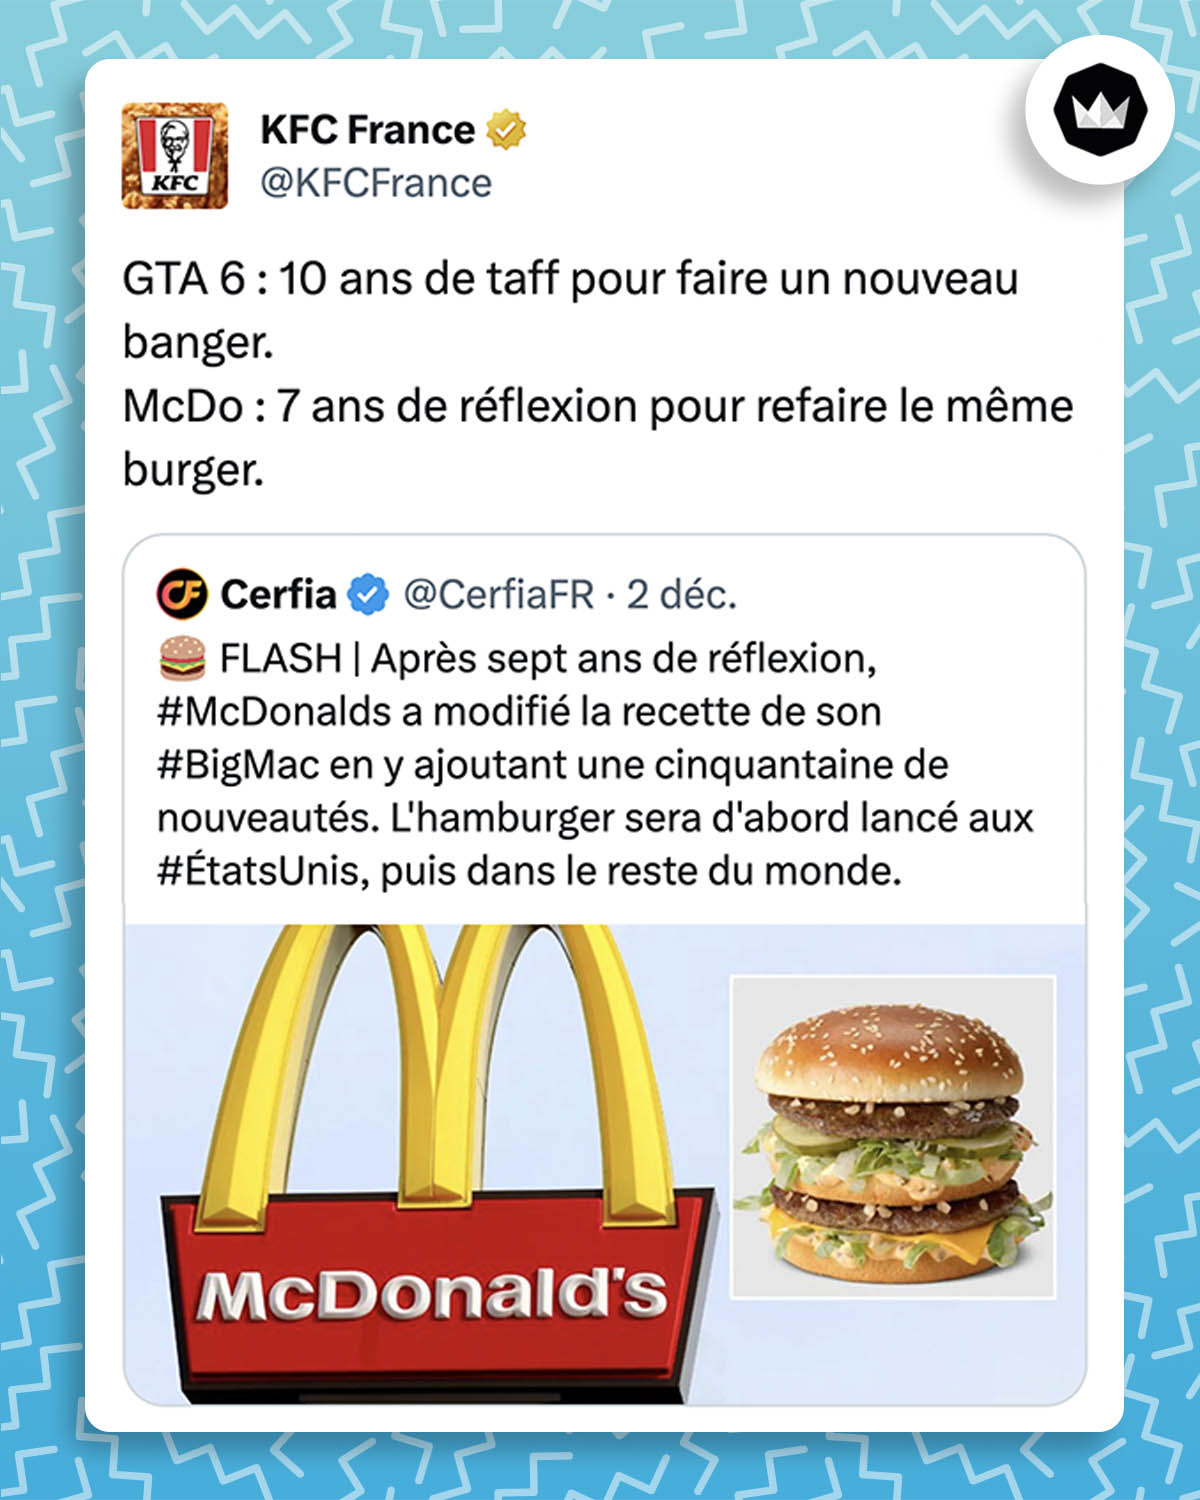 Tweet de KFC France : "GTA 6 : 10 ans de taff pour faire un nouveau banger. McDo : 7 ans de réflexion pour refaire le même burger." La marque répond à un tweet de Cerfia : "FLASH | Après sept ans de réflexion, #McDonalds a modifié la recette de son #BigMac en y ajoutant une cinquantaine de nouveautés. L'hamburger sera d'abord lancé aux #ÉtatsUnis, puis dans le reste du monde."